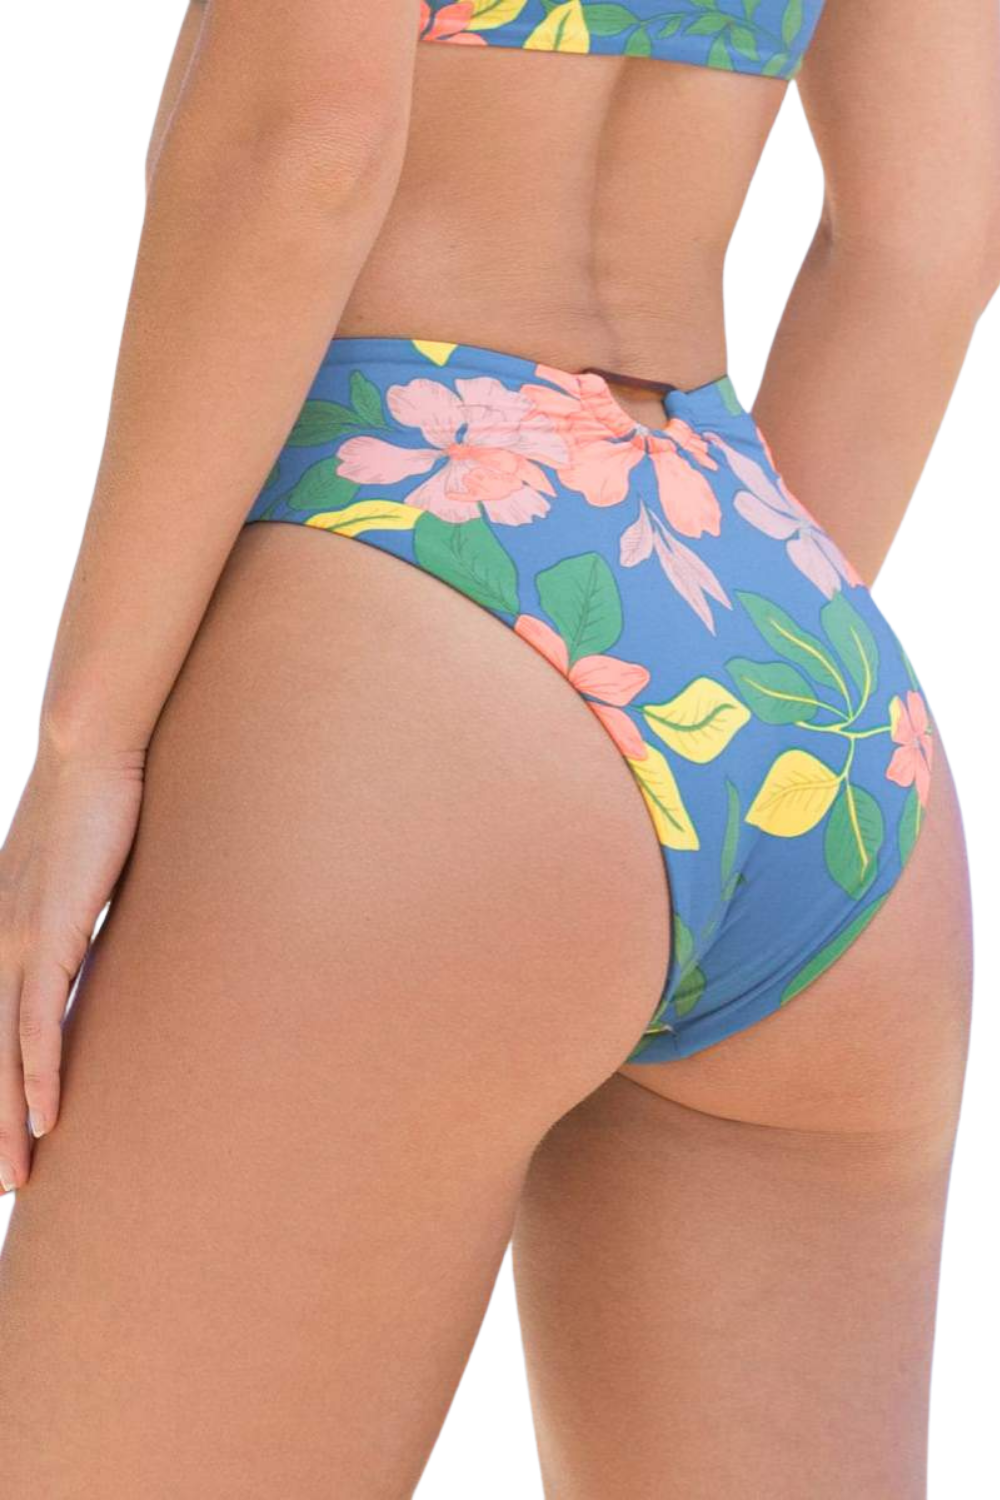 Star Flower Shiri High Rise/High Leg Bikini Bottom The Bikini Shoppe